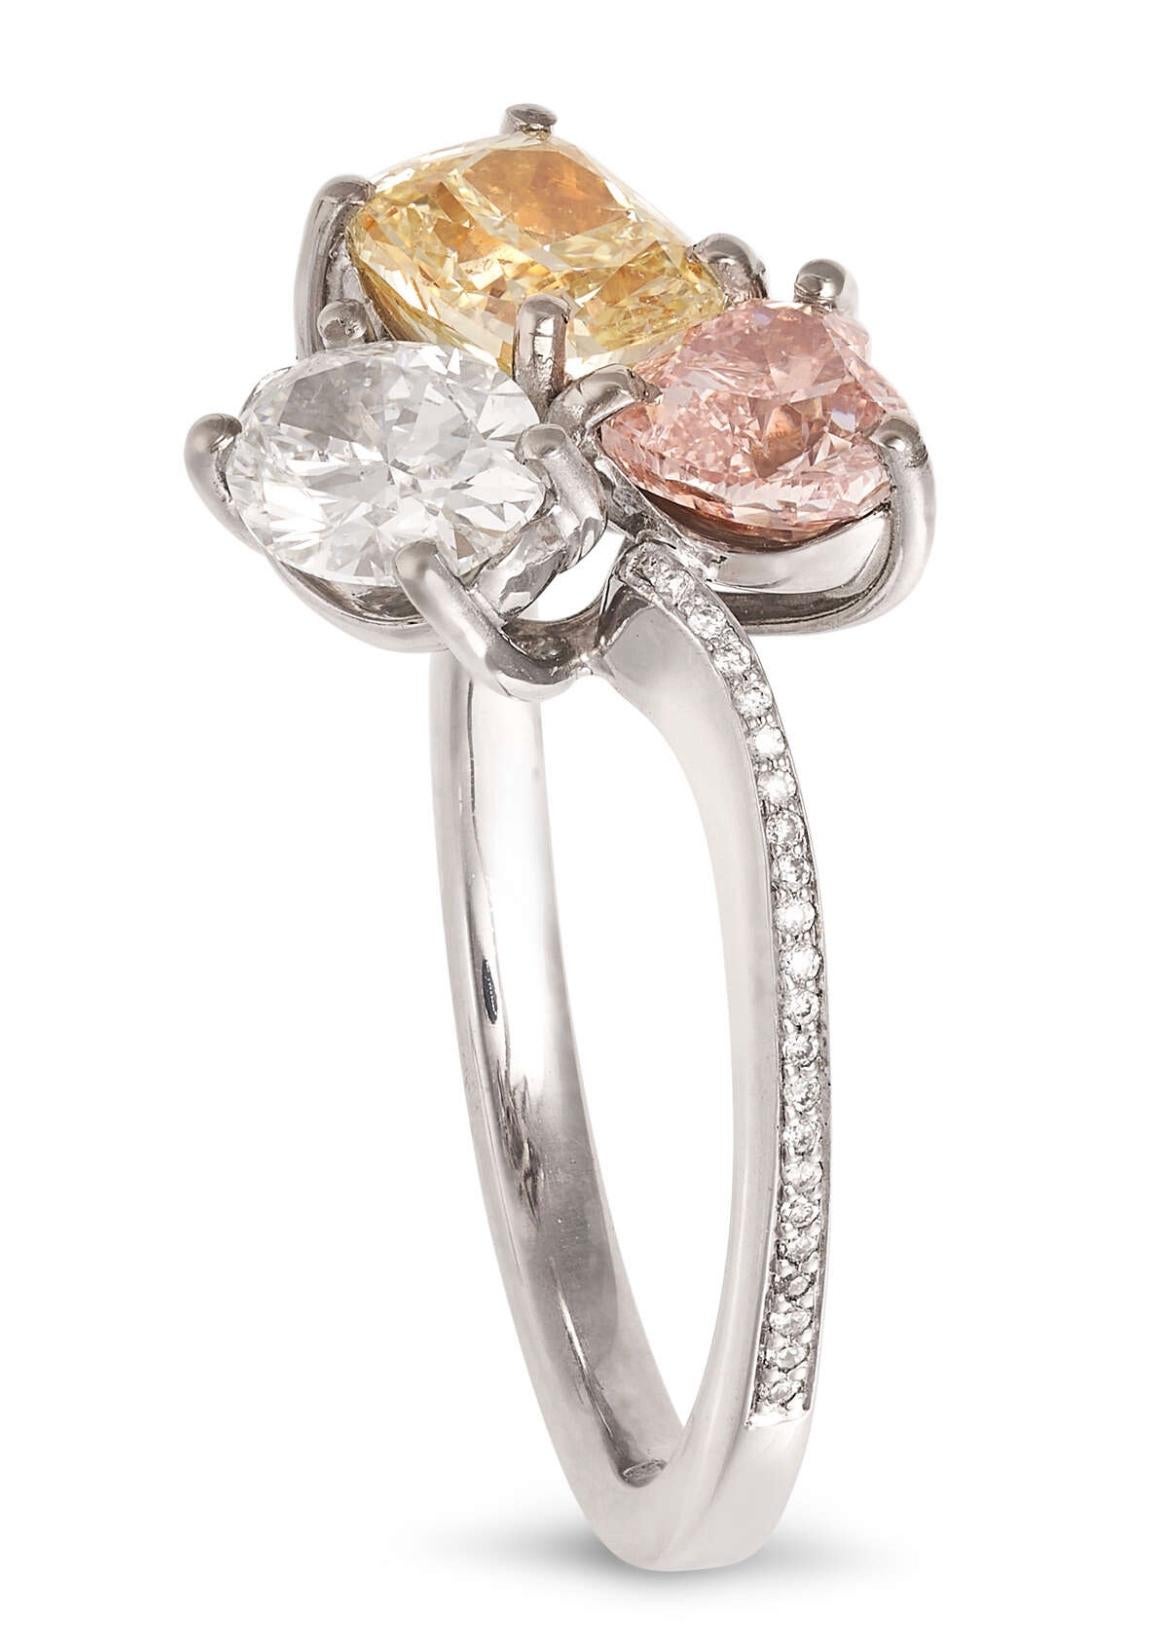 Description
BAGUE DE ROBE EN DIAMANT COLORÉ PAR SCARSELLI en or blanc 18ct, sertie d'un diamant rose de taille cœur de 0,63 carats, d'un diamant ovale de 0,60 carats et d'un diamant jaune de taille coussin de 0,90 carats, l'anneau étant rehaussé de